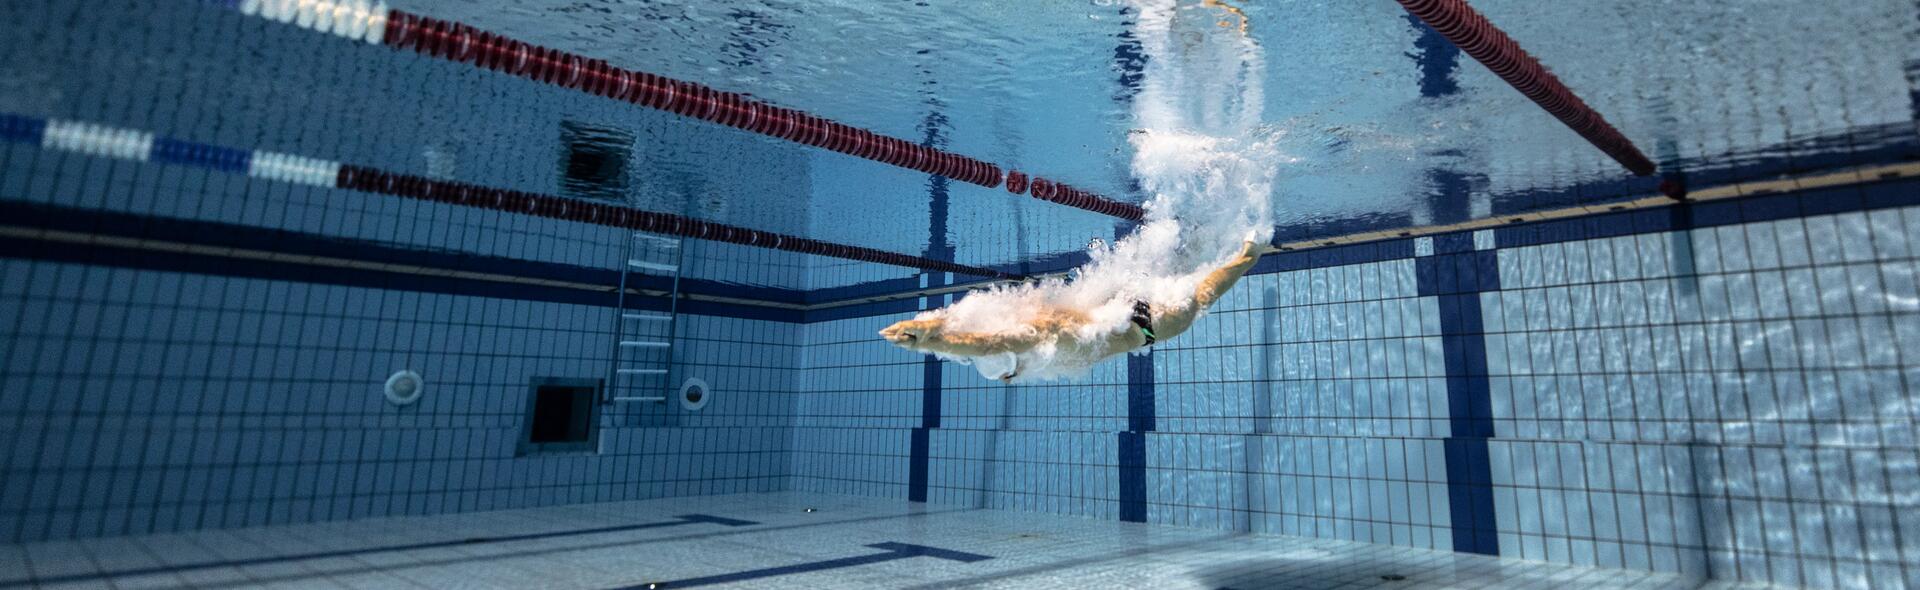 Zwemtraining: techniek en voortstuwing met de benen